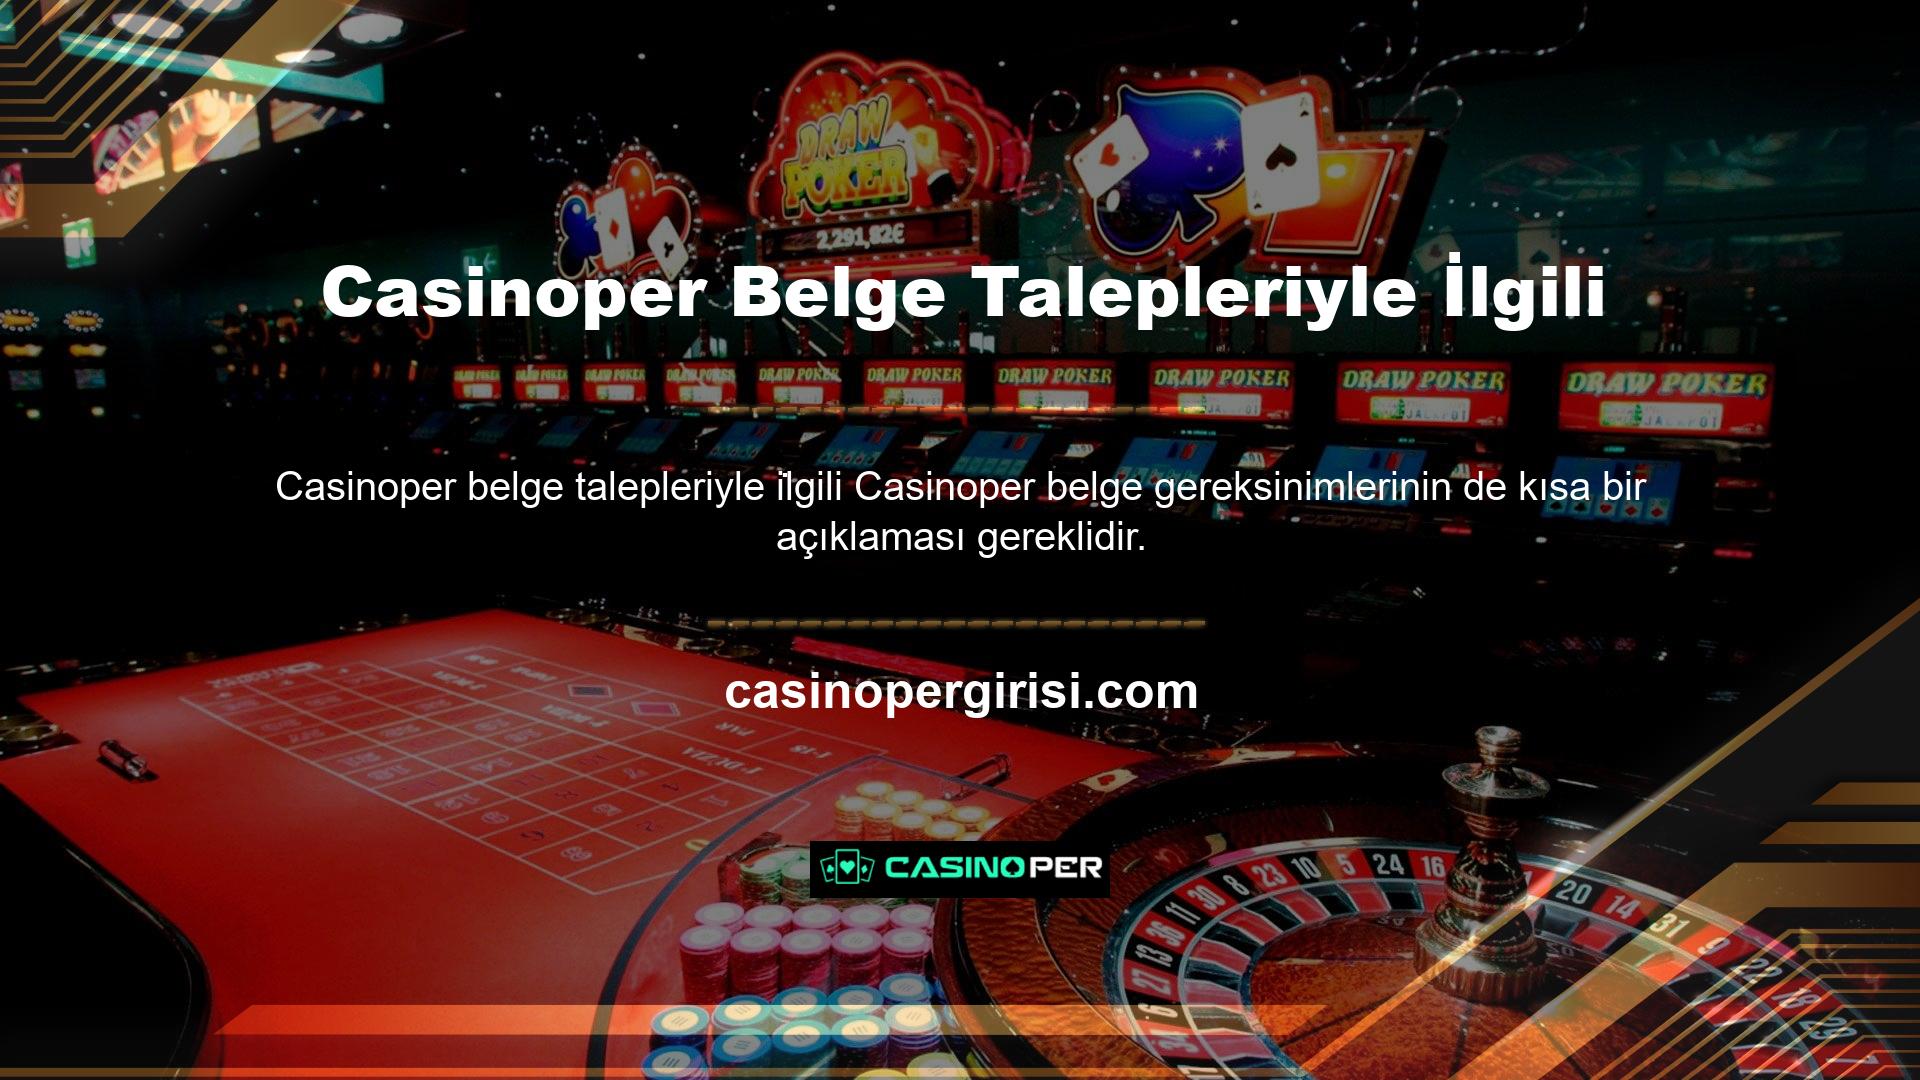 Casinoper web sitesi, kurallara uyan üyelerden herhangi bir belge talep etmemektedir